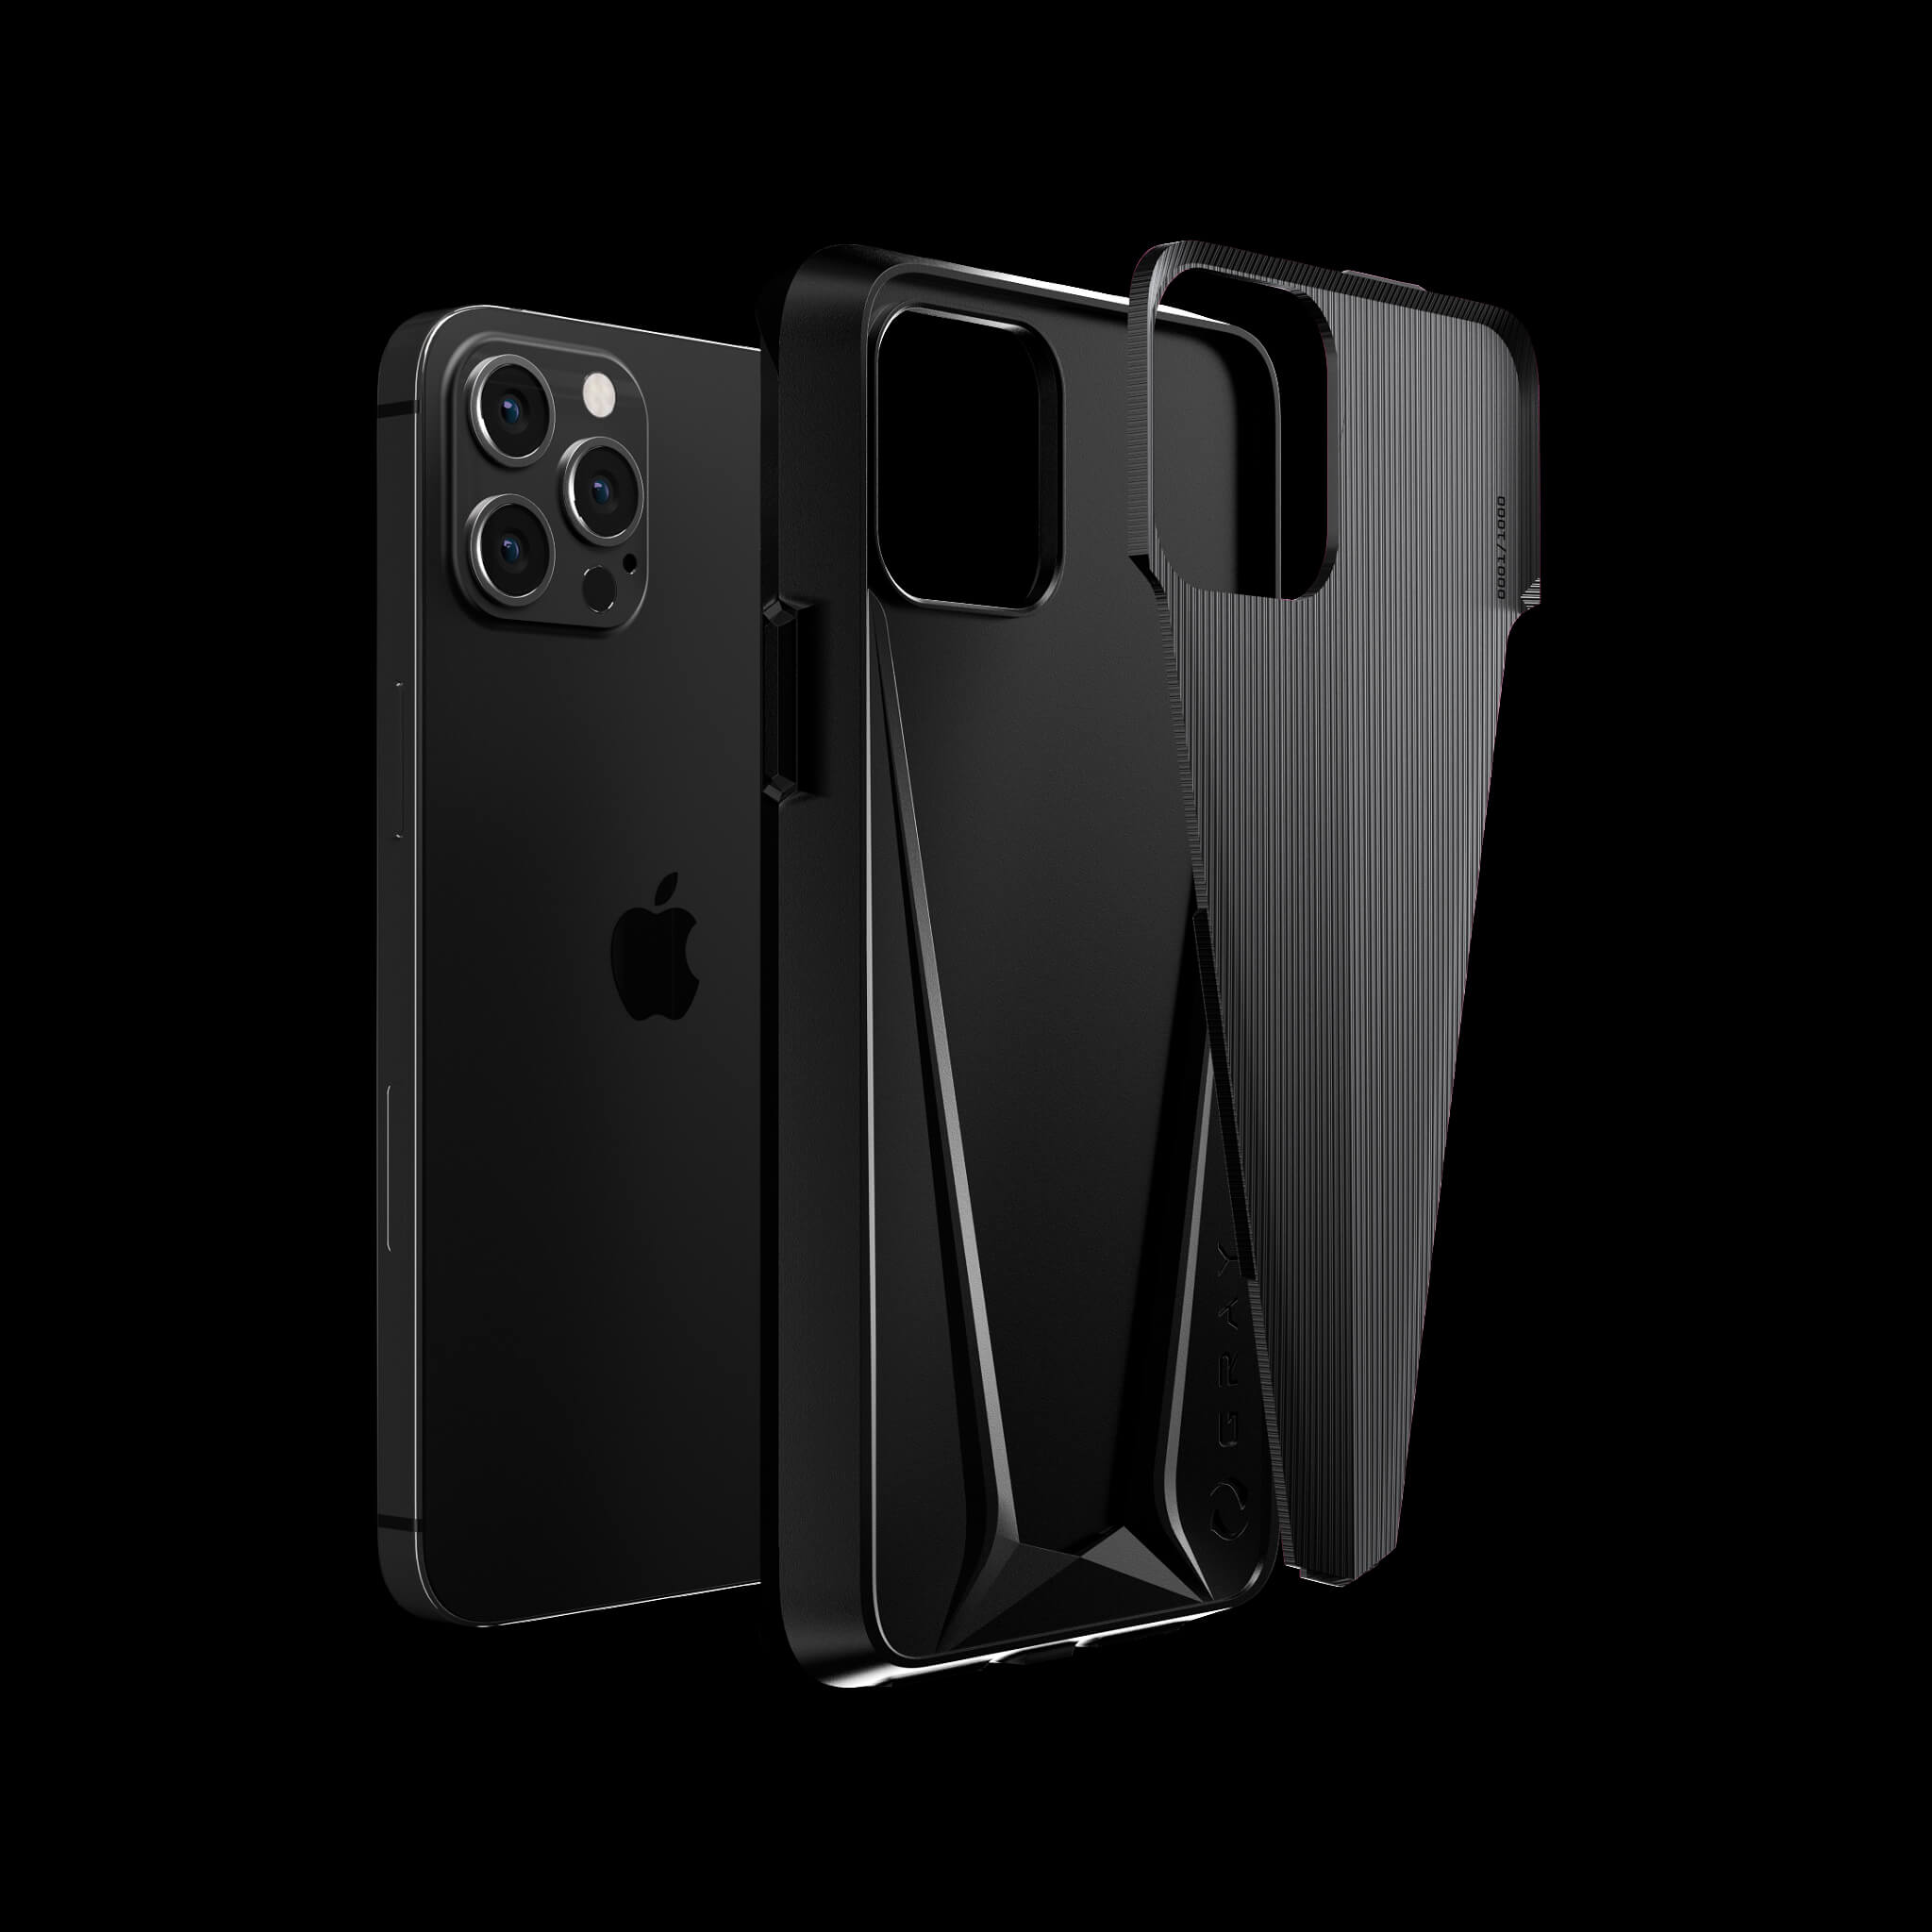 morpheus stealth black pvd titanium iPhone 12 pro case